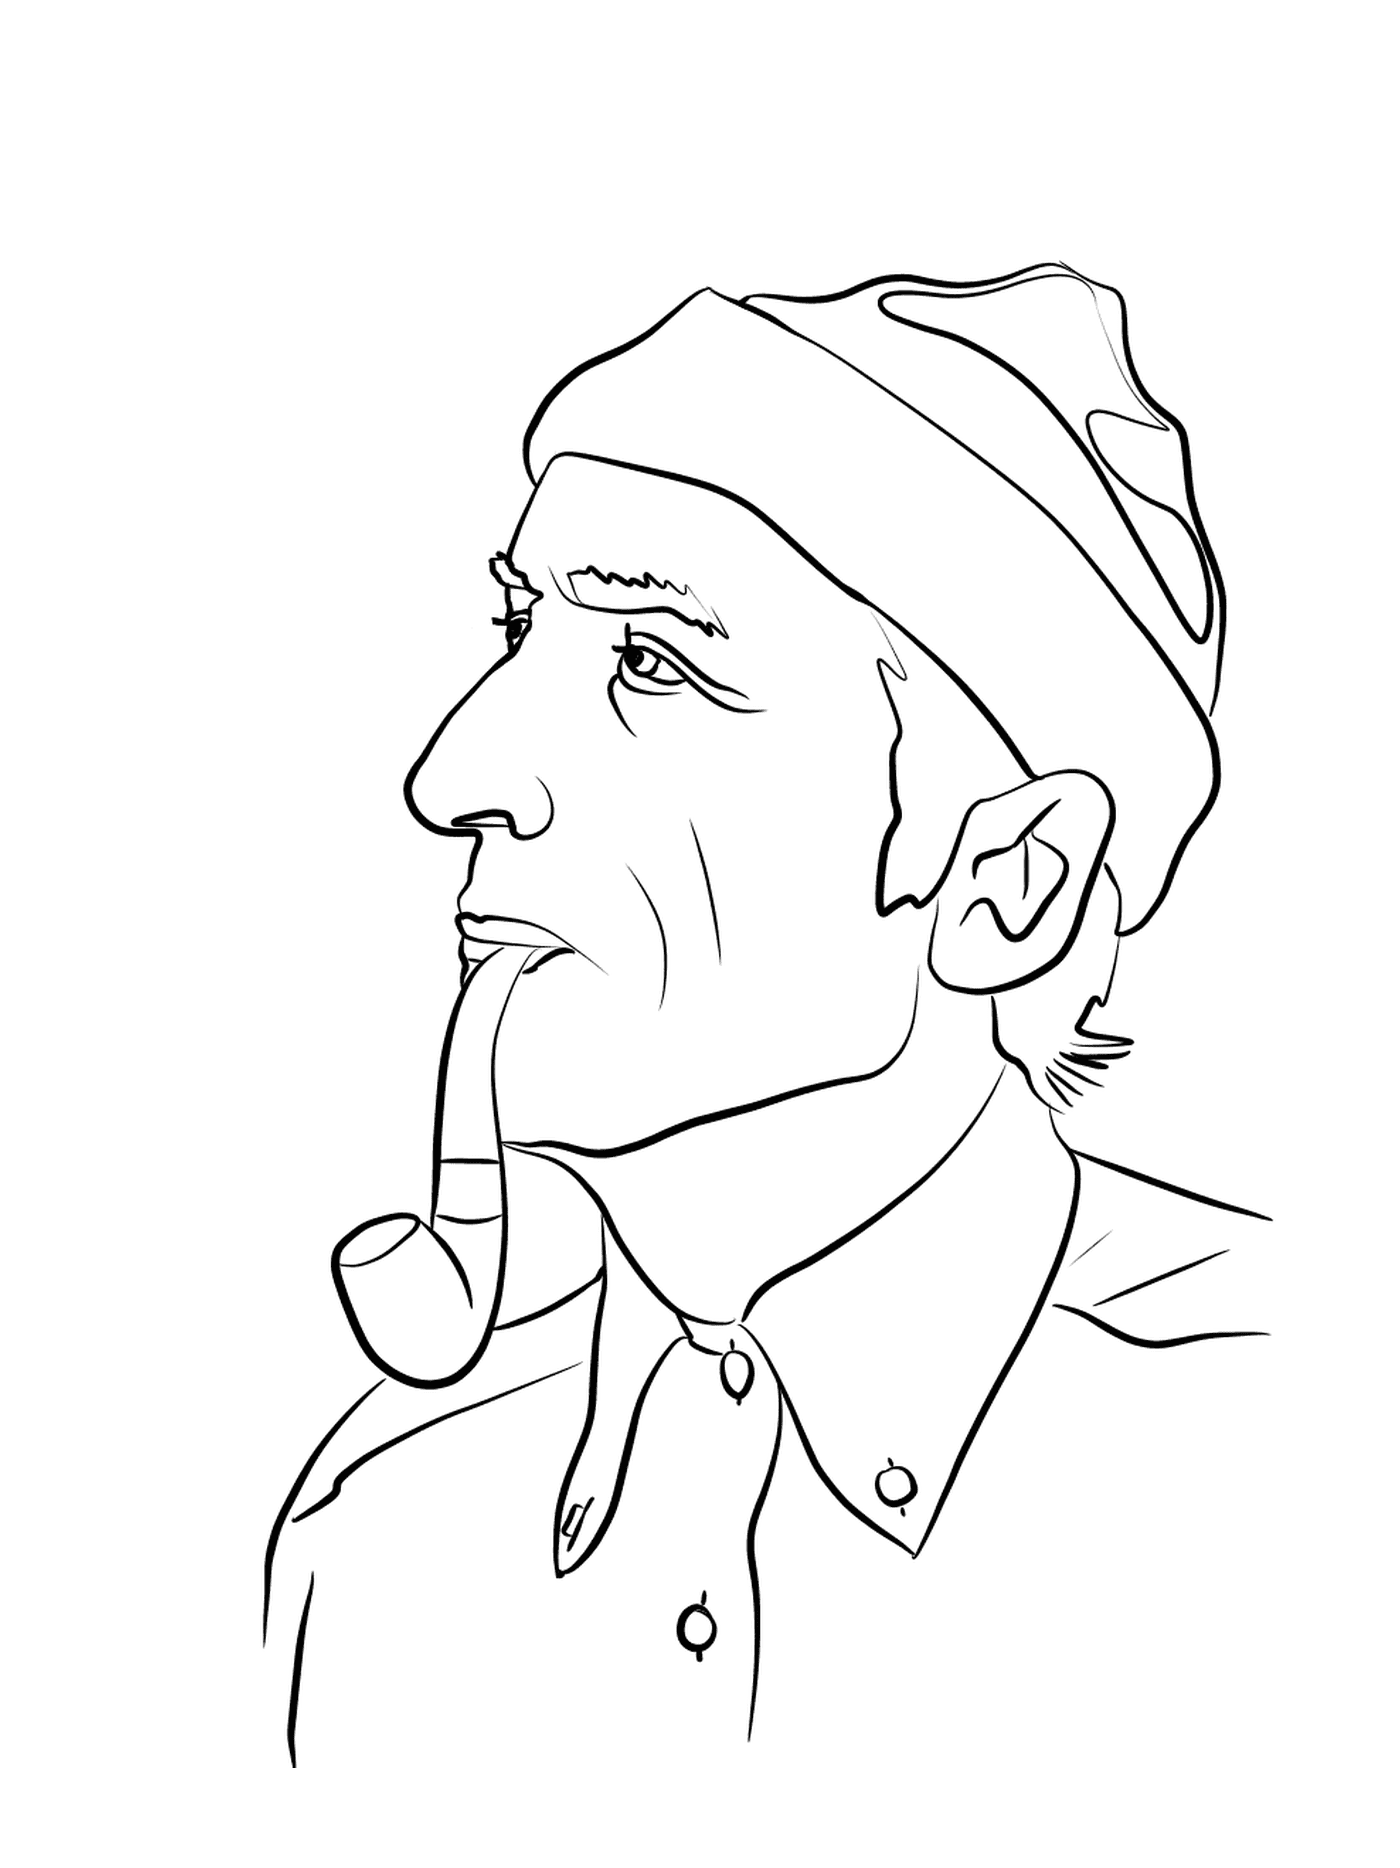  Jacques-Yves Cousteau, reconocido explorador 